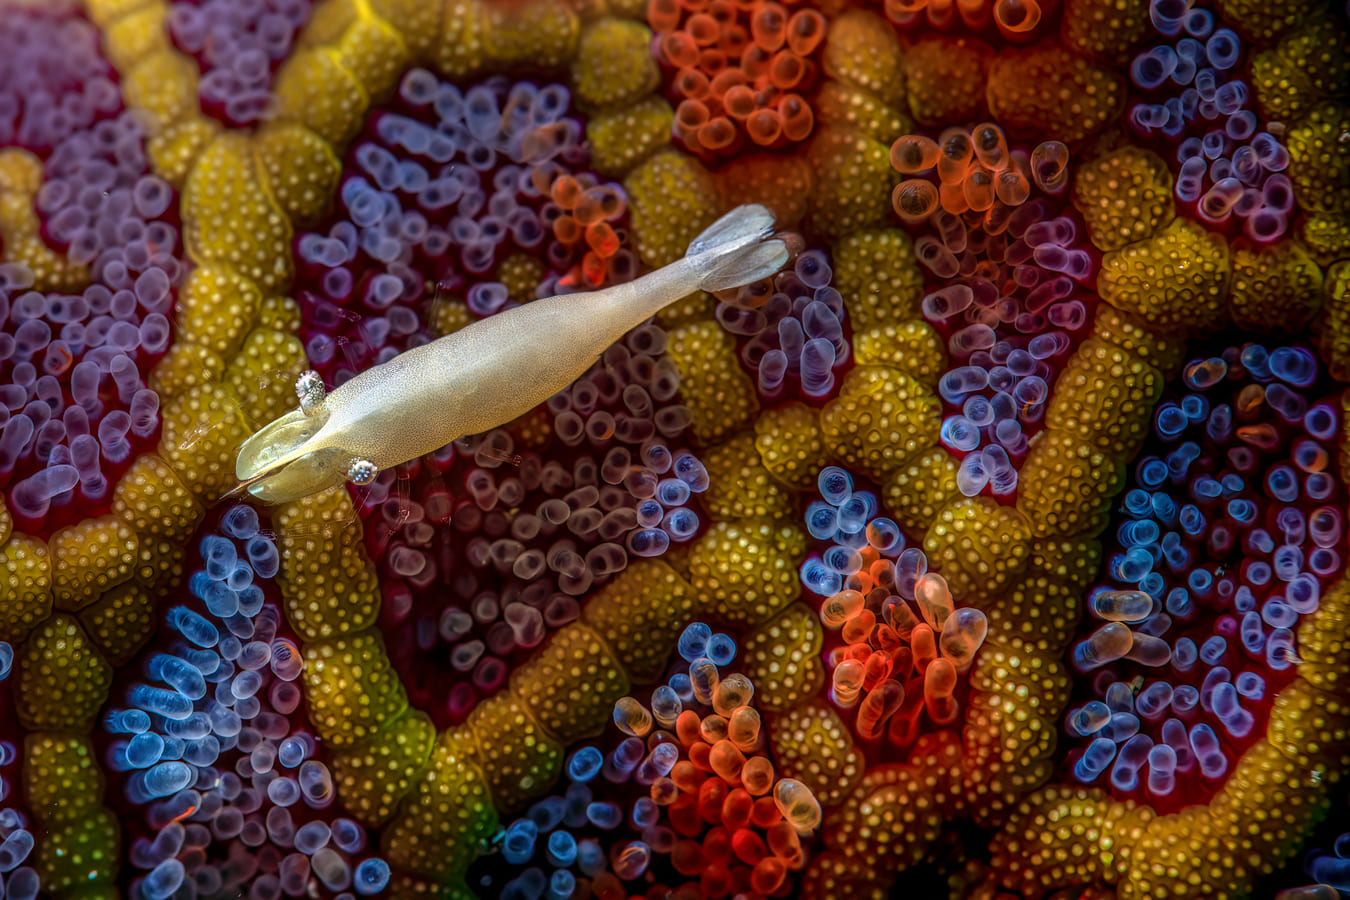 a shrimp floats above a Mosaic seastar